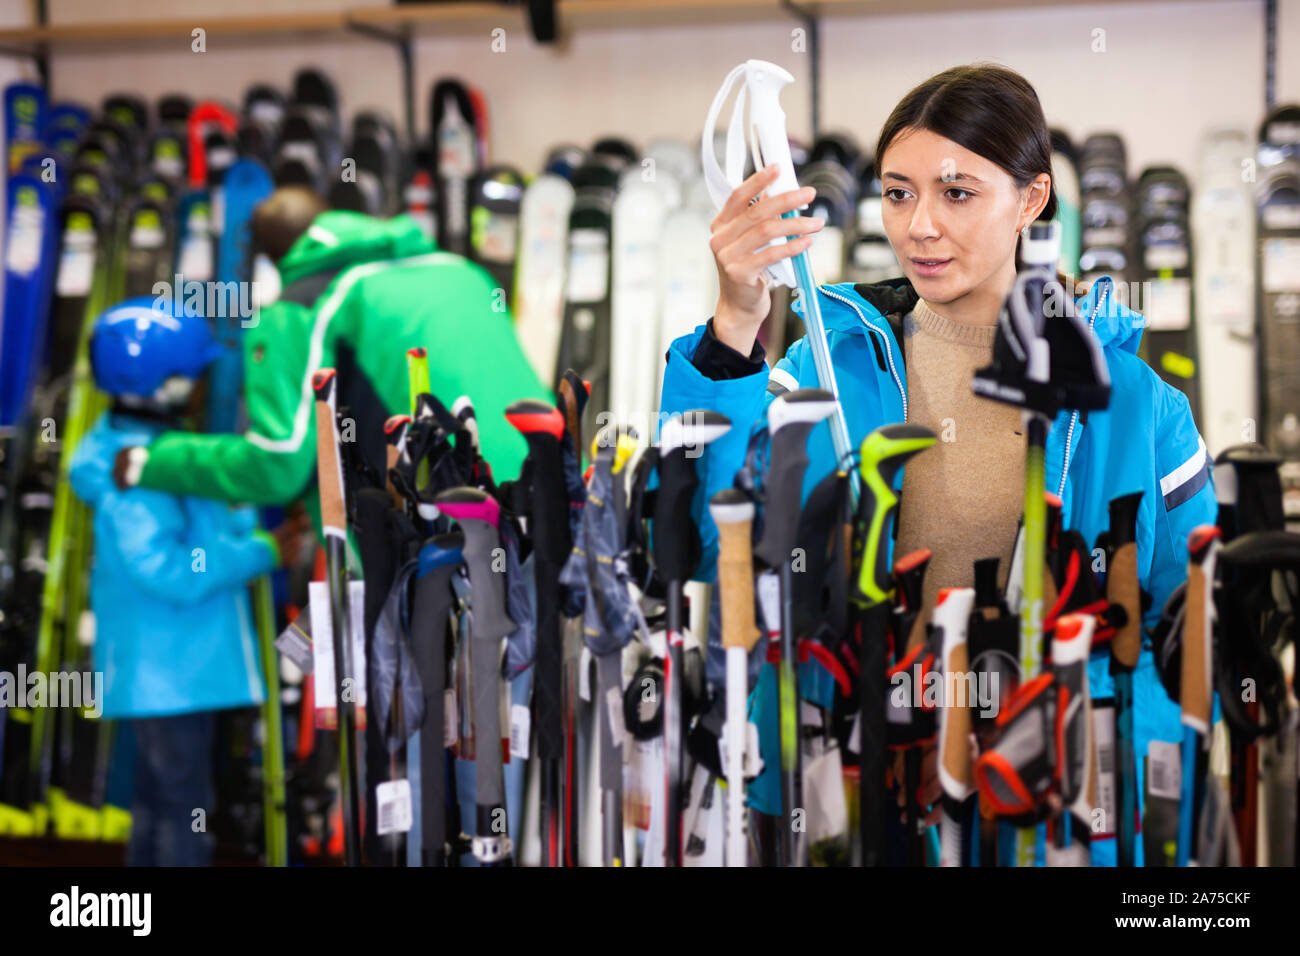 Attraktive positive Mädchen Wahl Skistöcke für Skifahren im Store von Sportgeräten Stockfoto